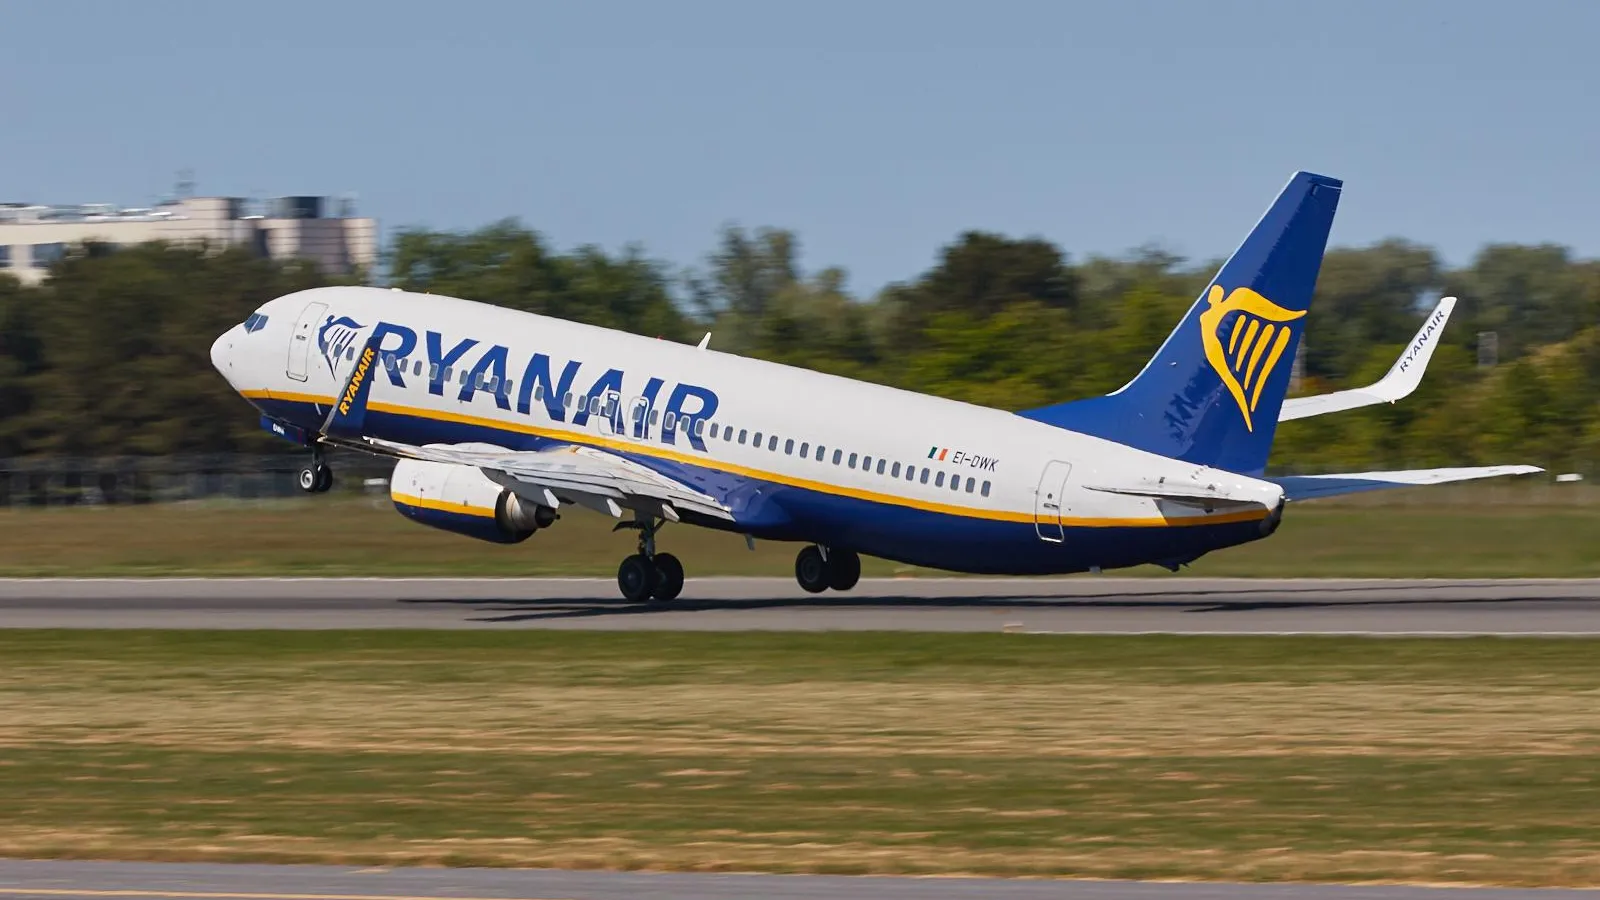 Ирландский лоукостер Ryanair продает билеты за копейки, чтобы удержать клиентов